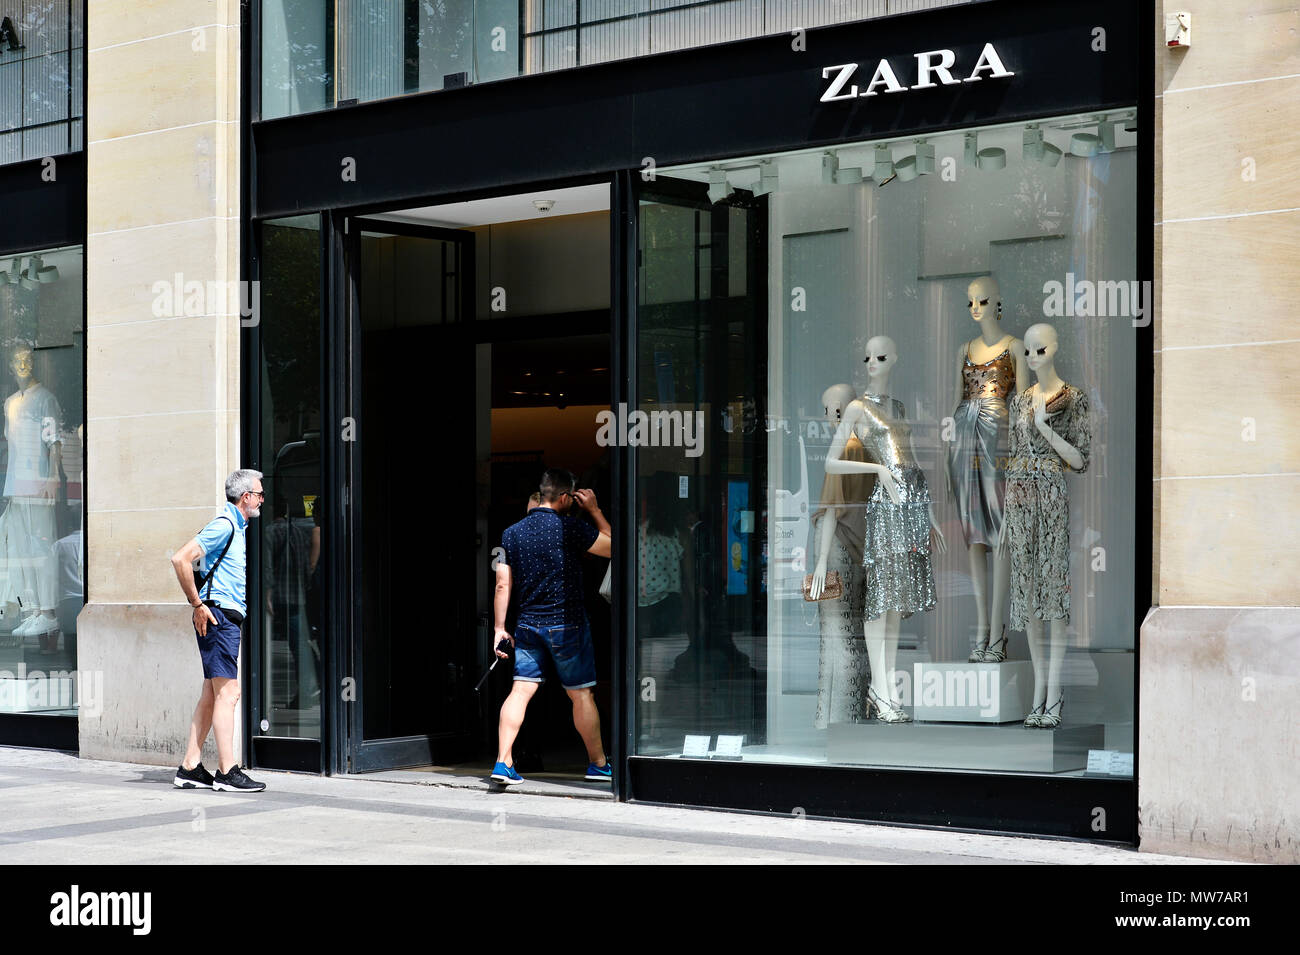 Tienda de Zara en les Champs Elysées - París - Francia Fotografía de stock  - Alamy